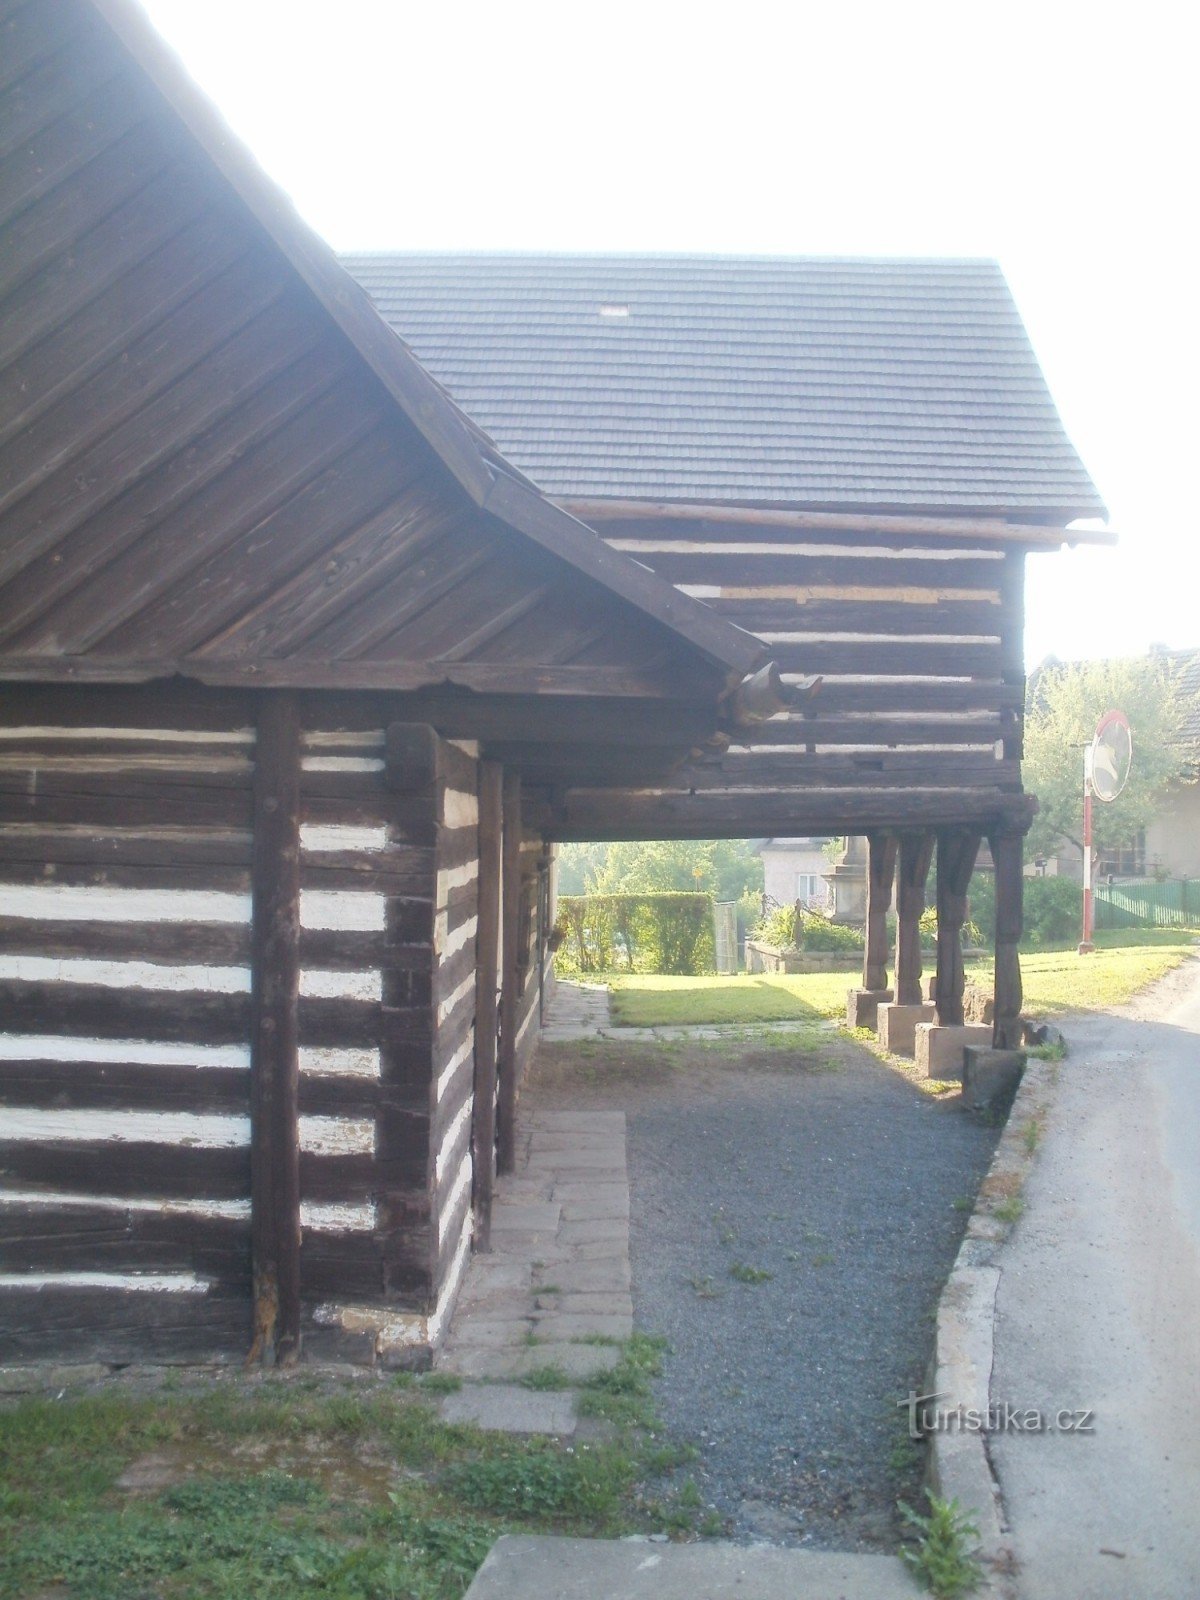 răscruce turistică Hořiněves - Hankův dům